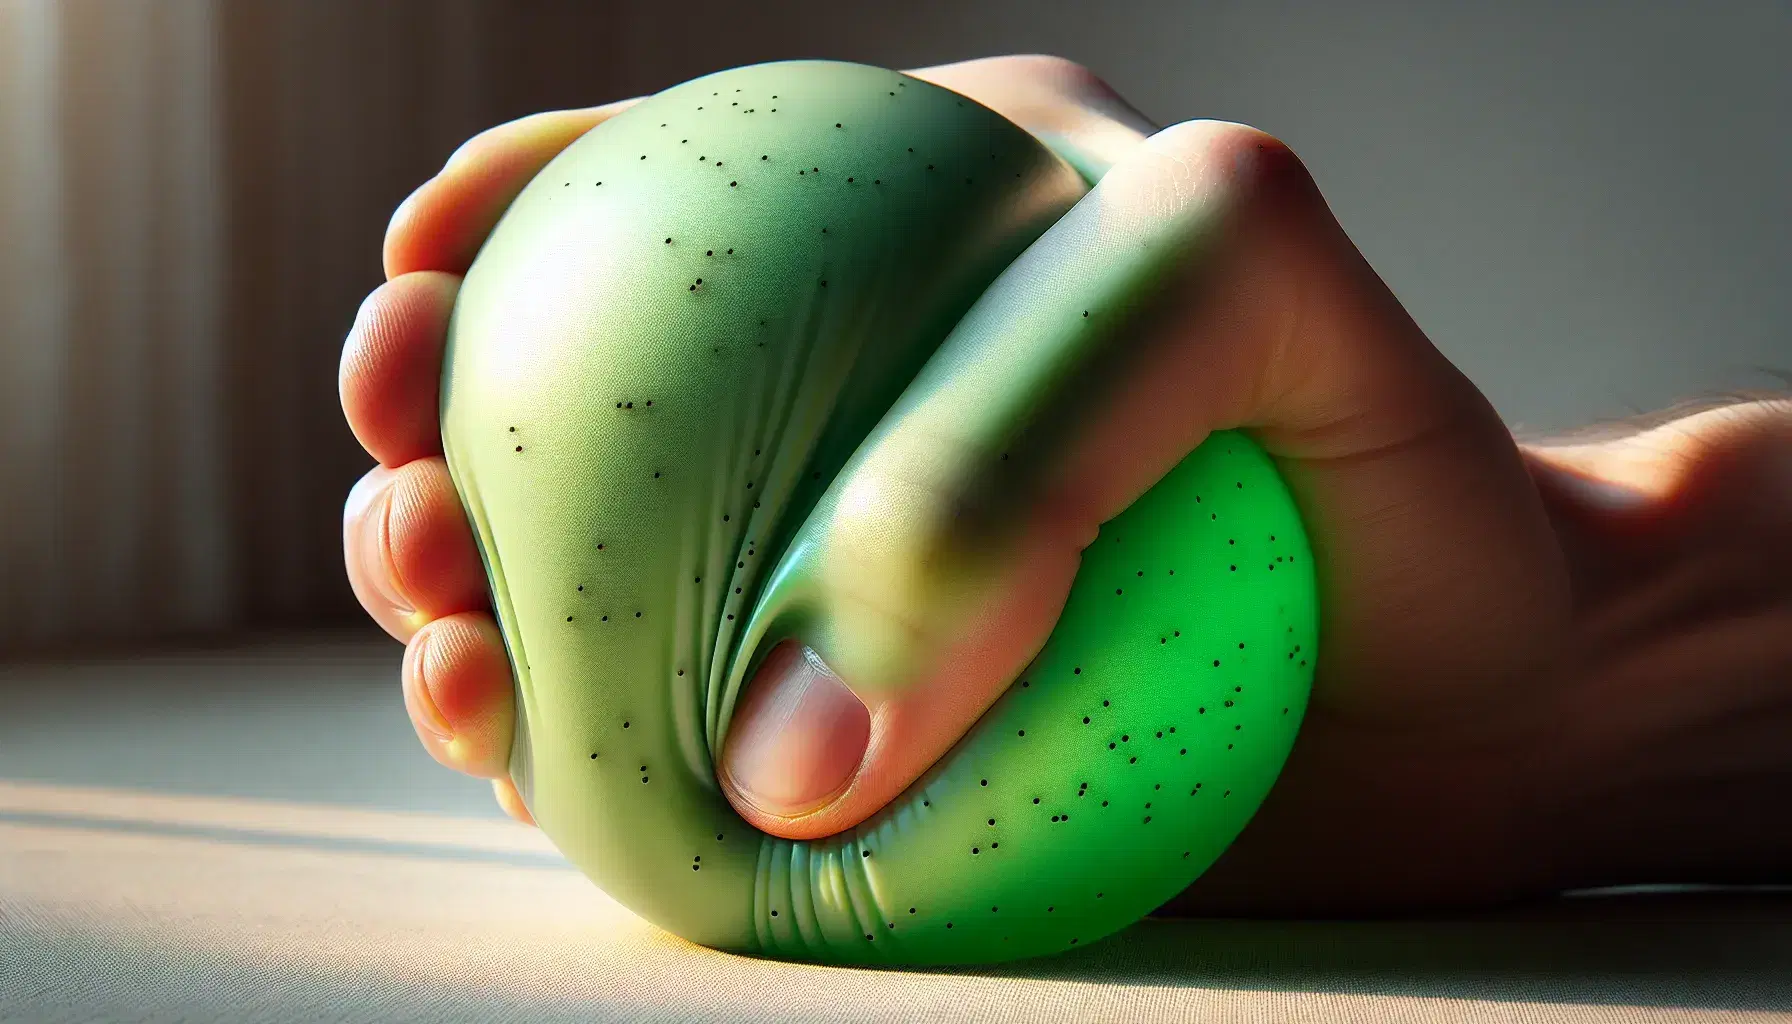 Mano humana comprimiendo pelota de goma verde con puntos negros, mostrando elasticidad y textura en un fondo desenfocado.